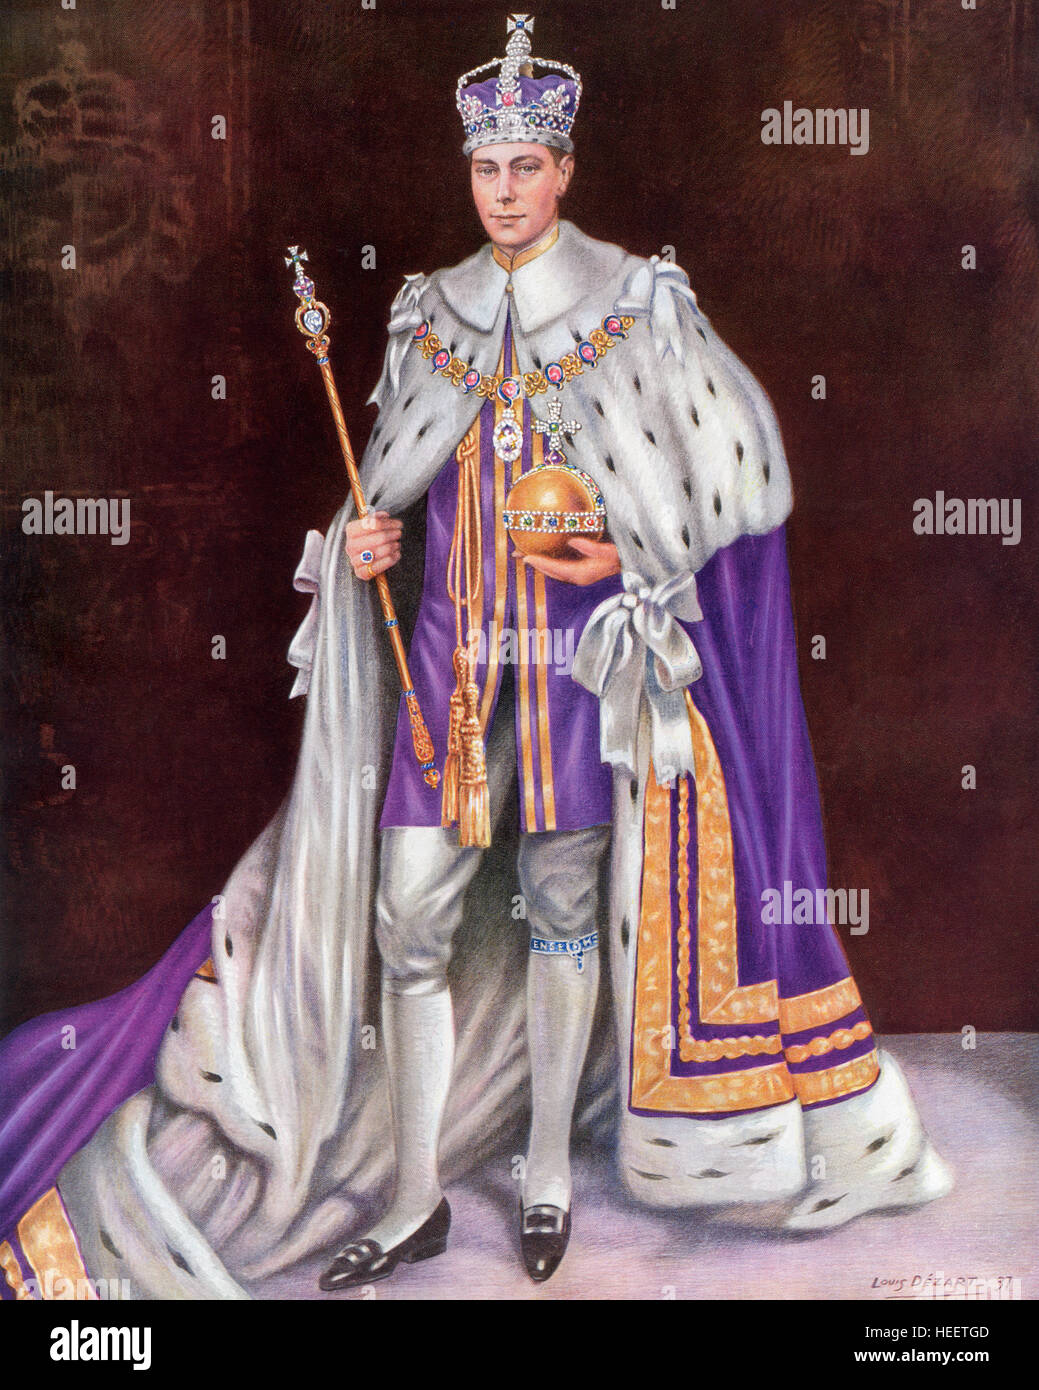 George VI, 1895 – 1952.  König des Vereinigten Königreichs und der Besitzungen des britischen Commonwealth. Hier zu sehen am Tag seiner Krönung im Jahre 1936 trägt die Krönung Roben und die Krone und hält den Reichsapfel und Zepter. Stockfoto